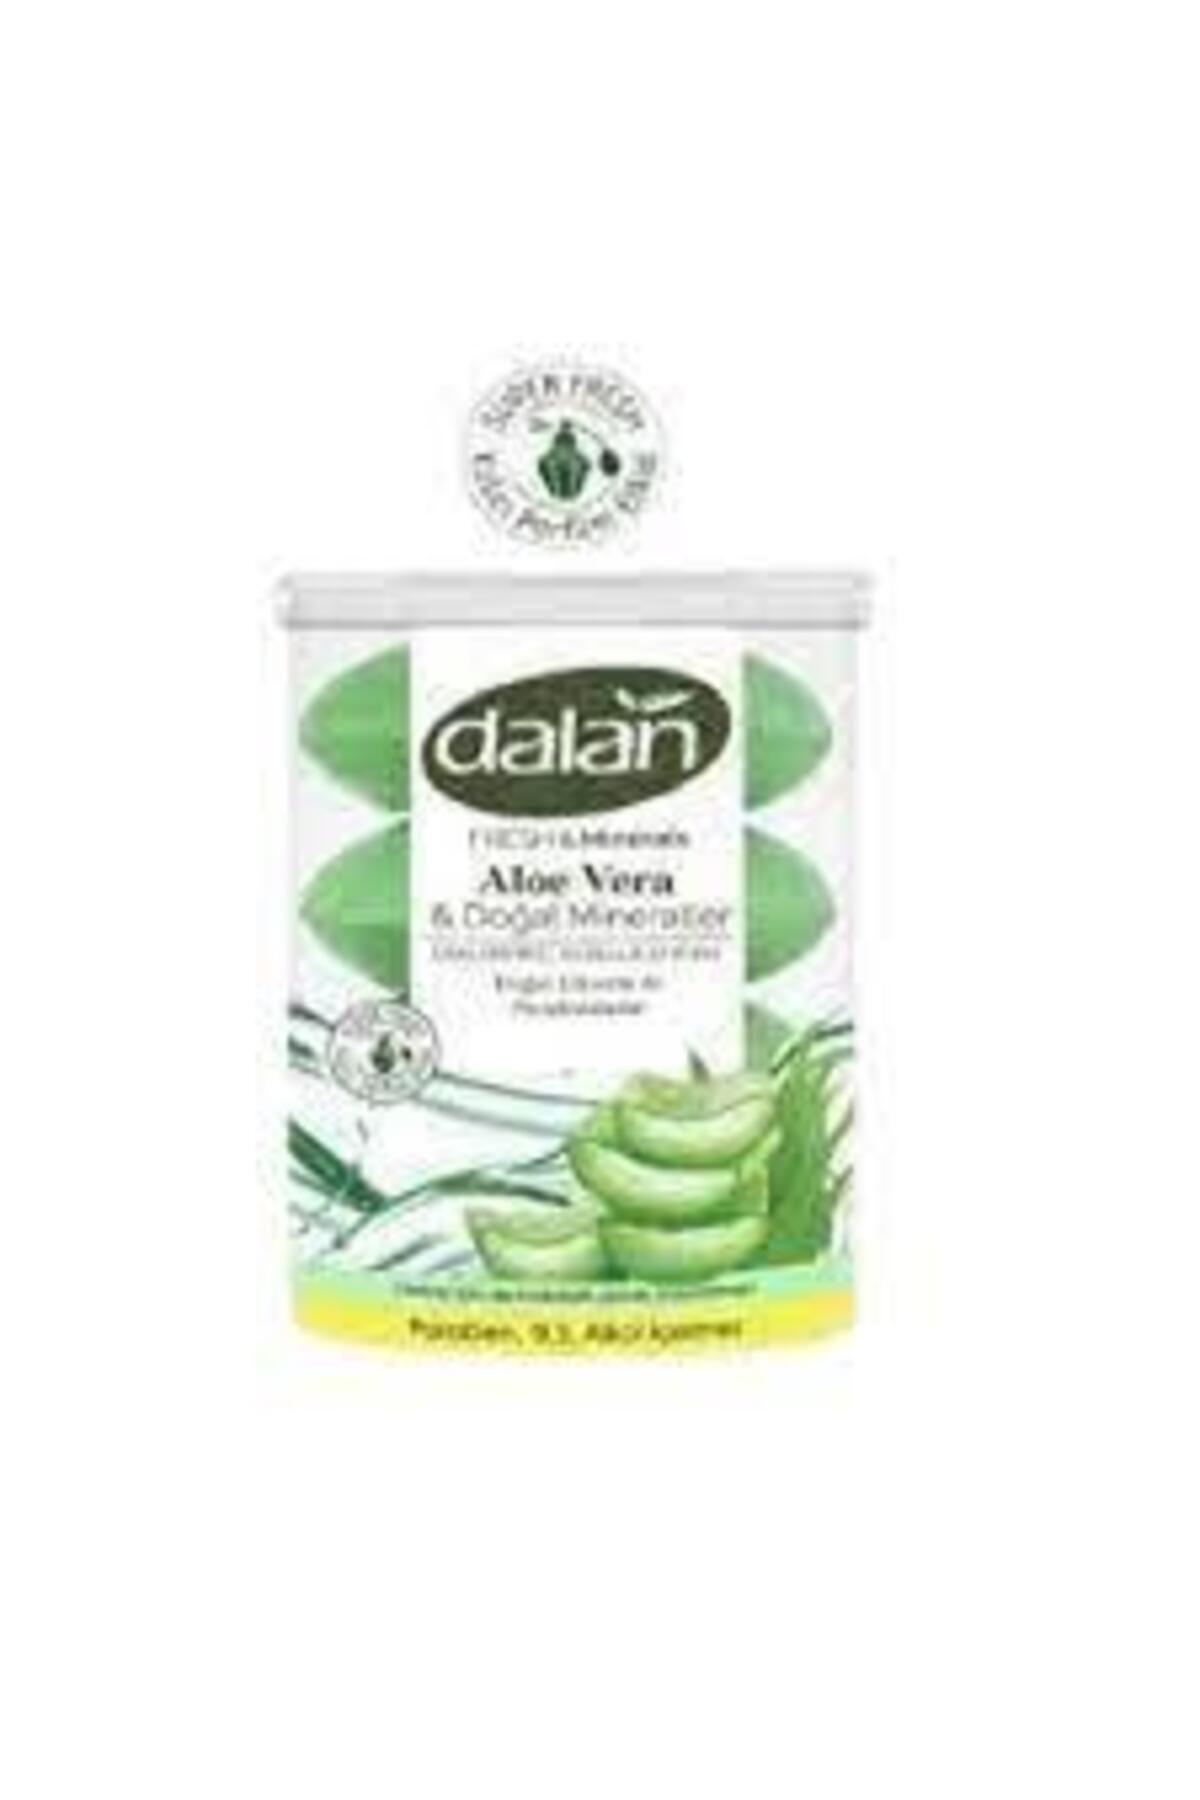 Dalan Fresh Minerals Duş Sabunu Aloe Vera 4 X 110 gr